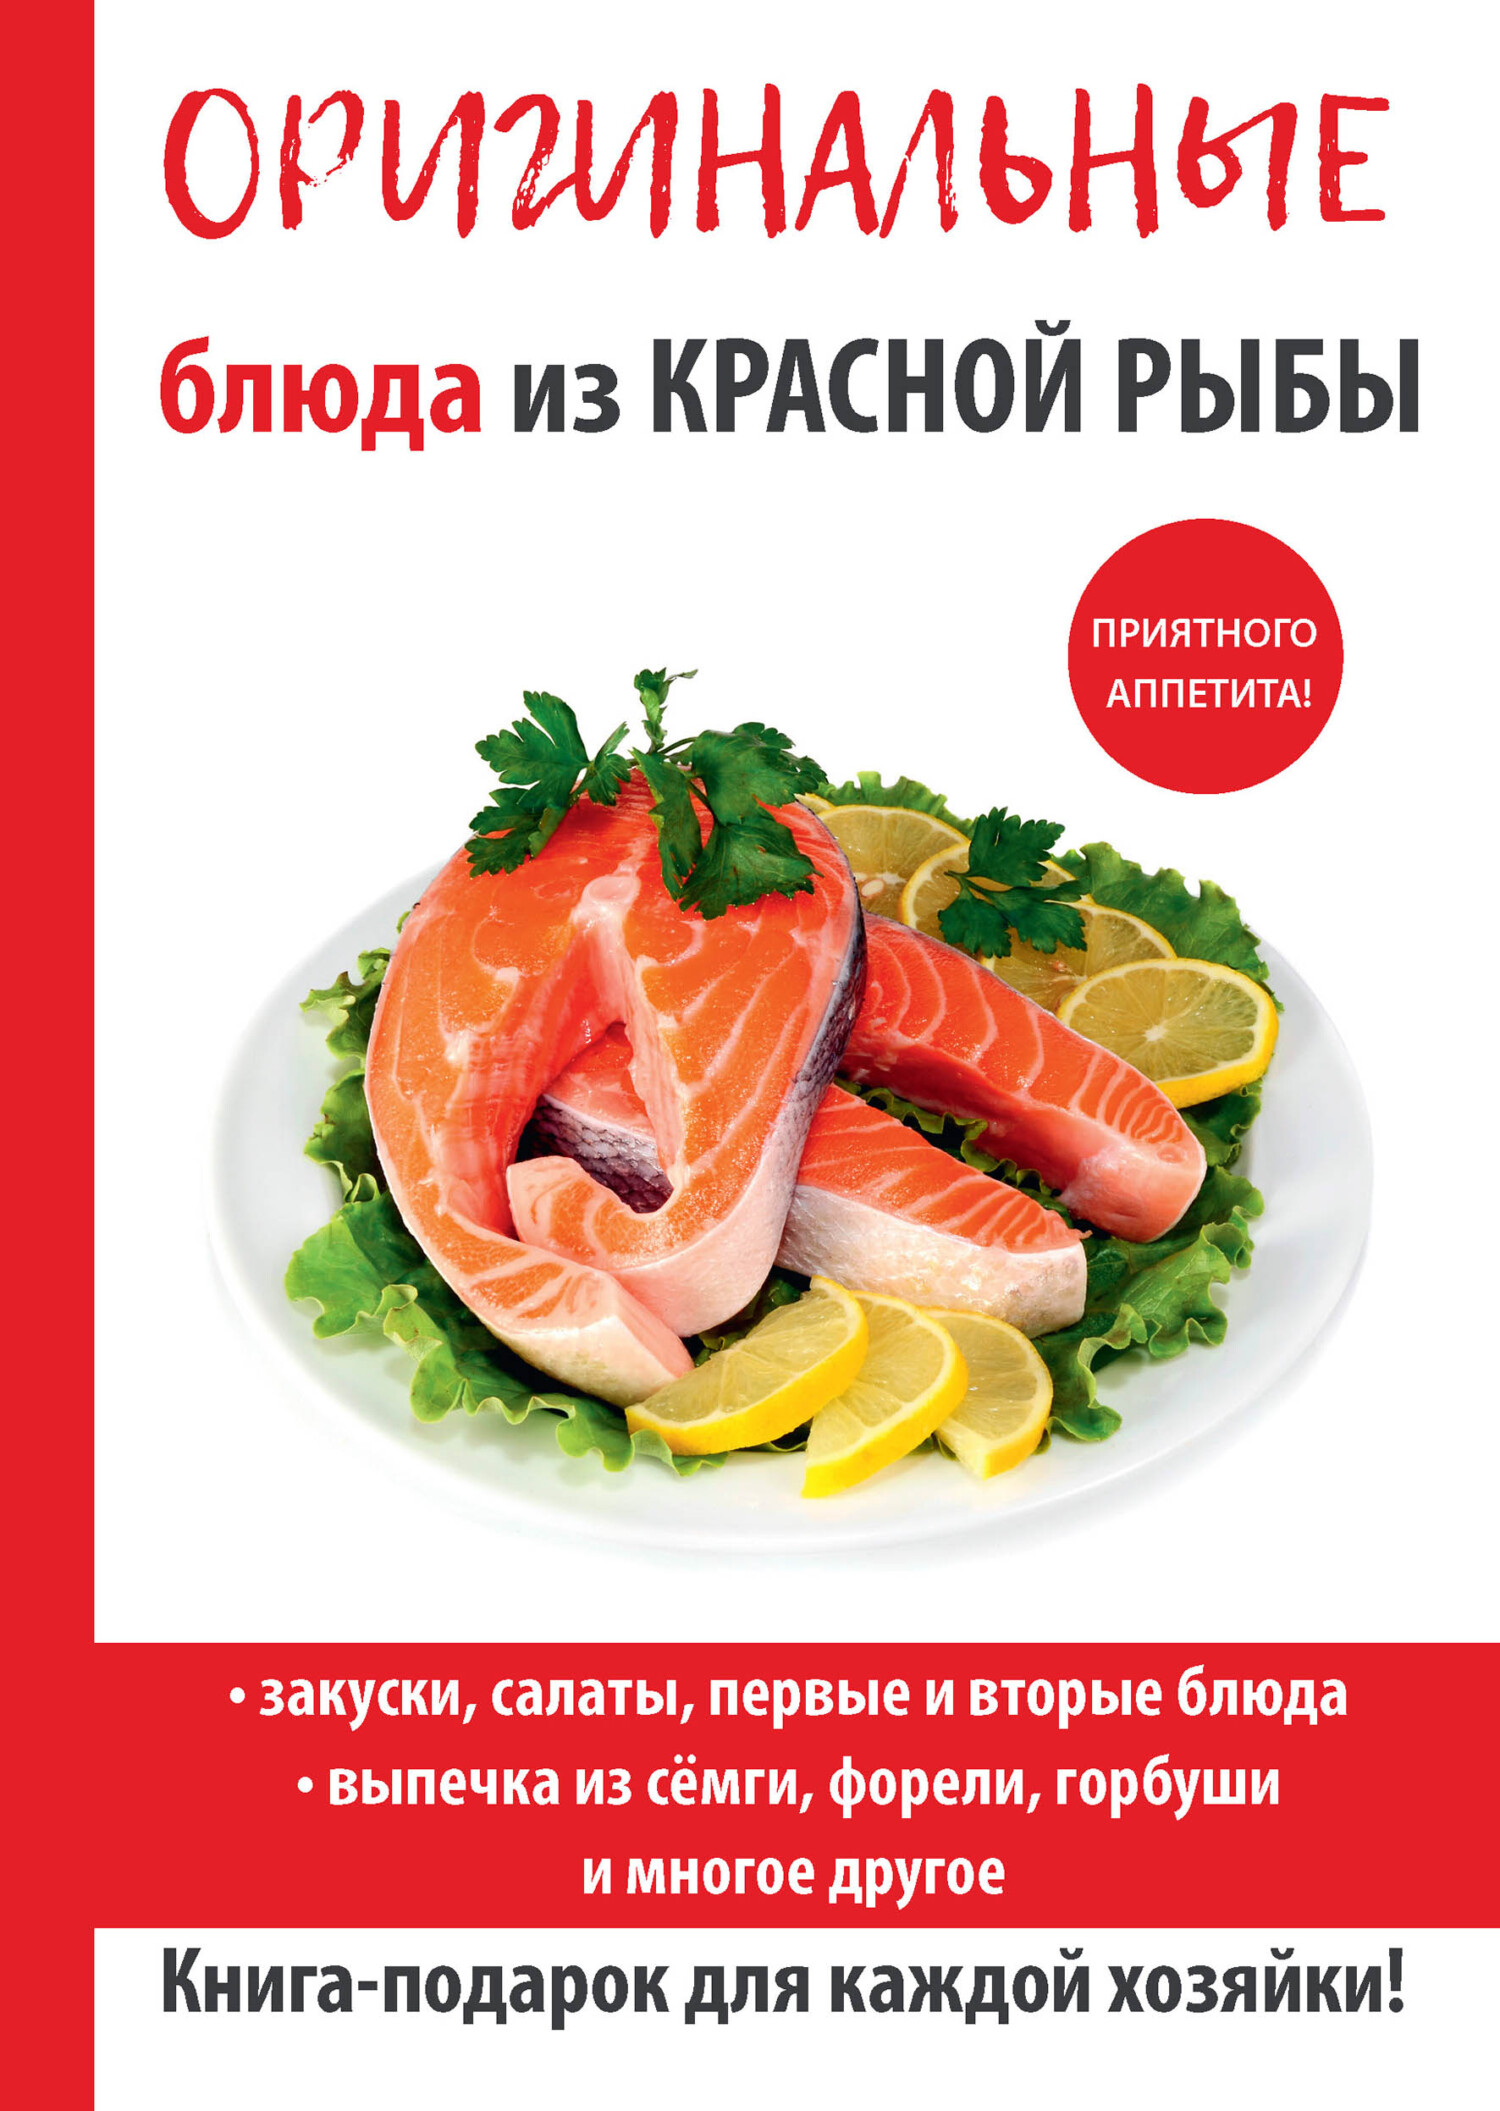 Рыба красная соленая: блюда и рецепты